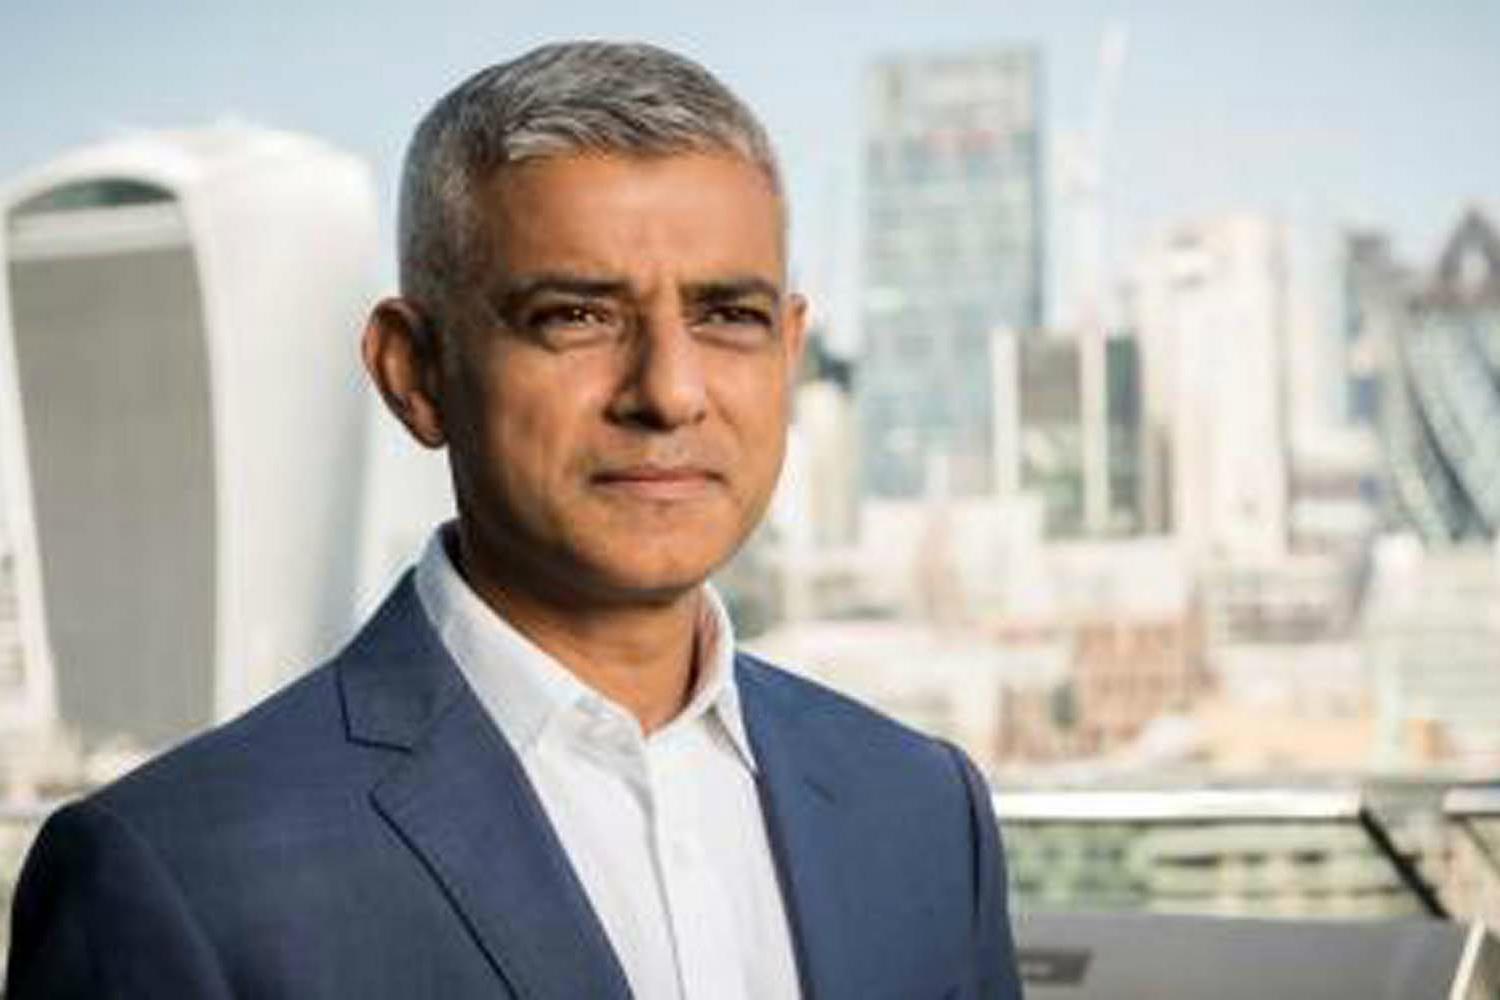 London Mayor Sadiq Khan